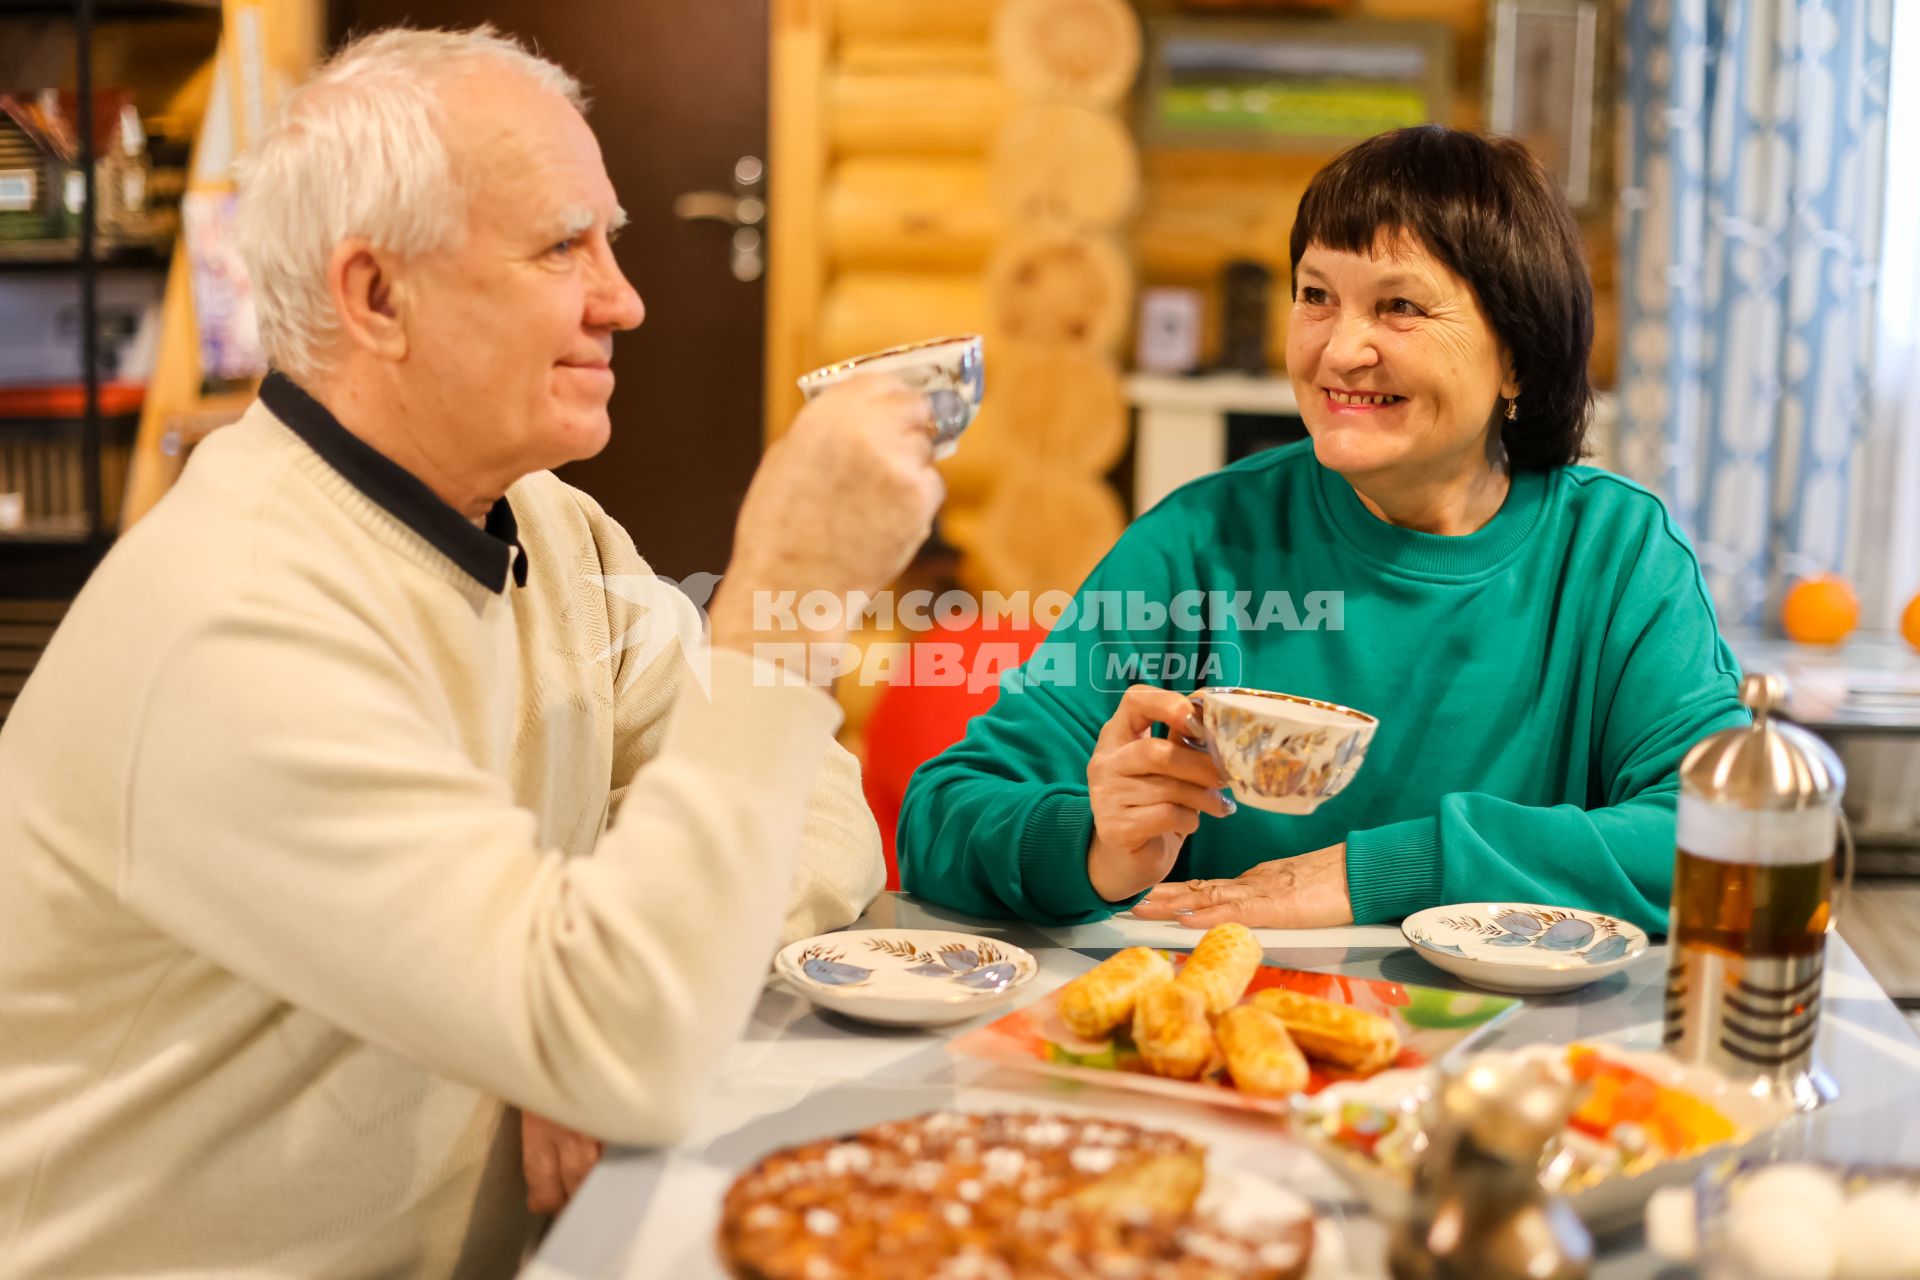 Красноярск. Пожилая пара пьет чай в своем загородном доме.